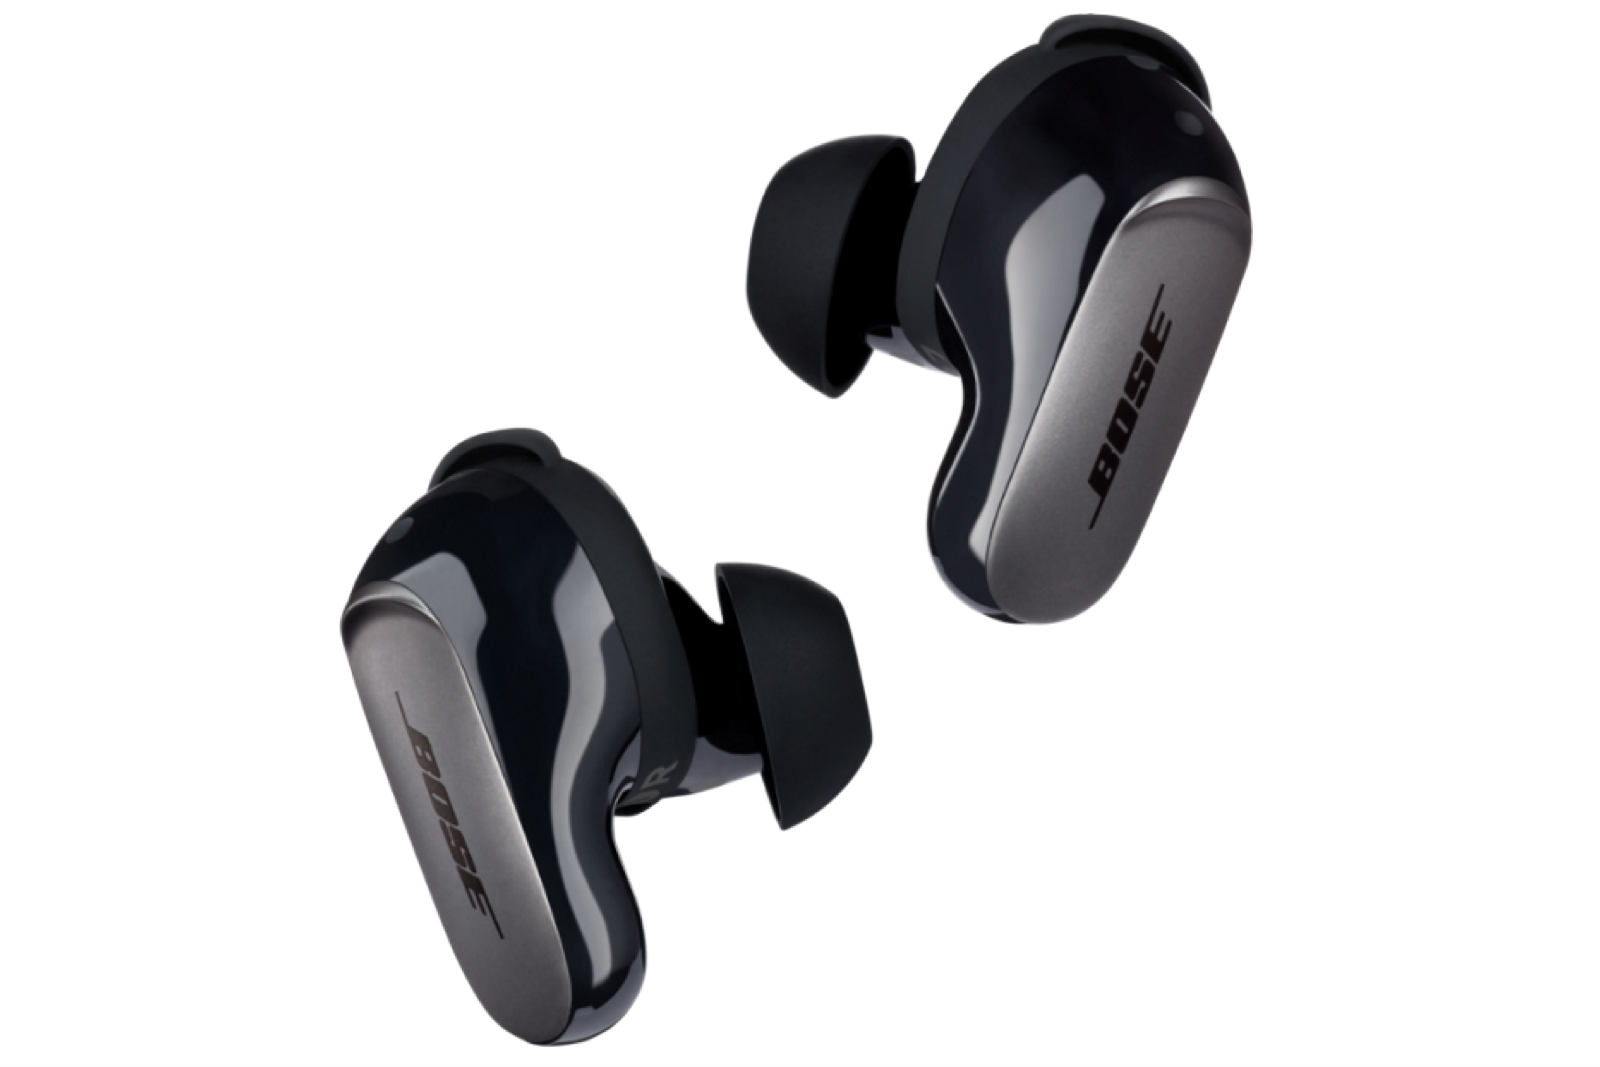 Bose-QuietComfort-Ultra-Earbuds